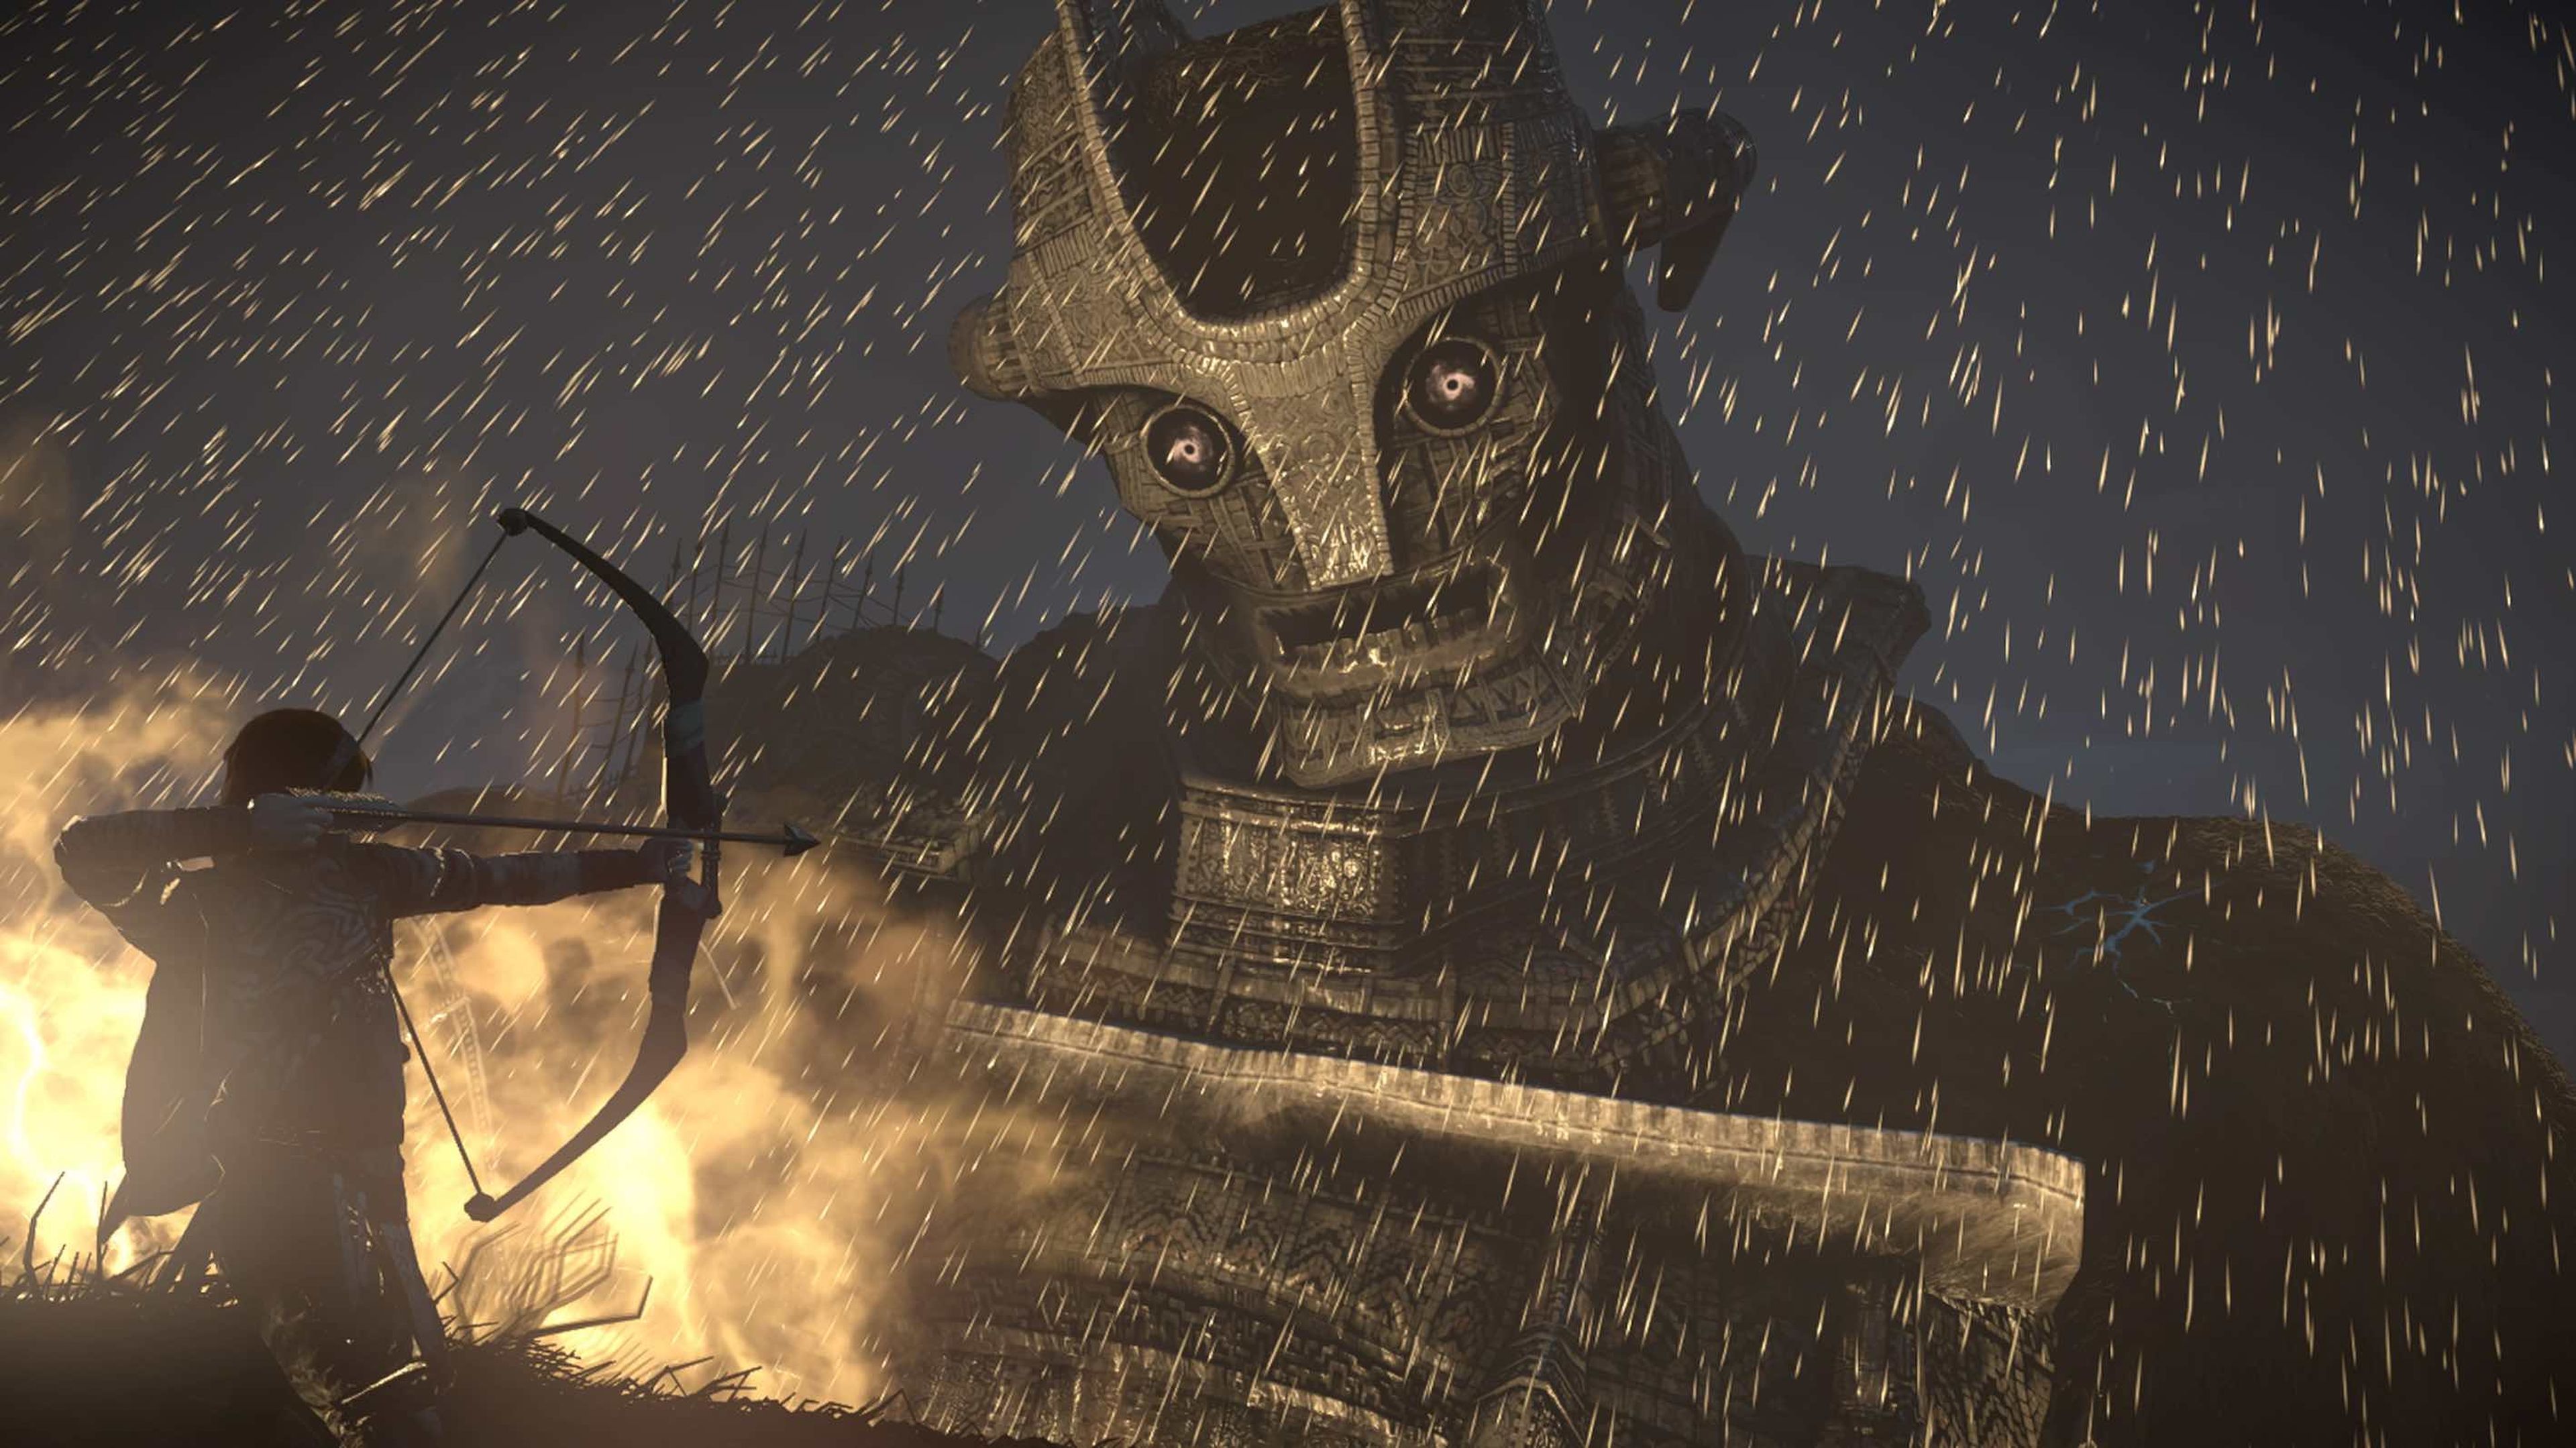 Shadow of the Colossus consigue correr a 60 fps constantes y fluidos en PS4 Pro (30 fps en PS4 Slim). Aunque el entorno esté sobrecargado, como en esta escena lluviosa, rara vez la tasa de fps cae por debajo de los límites fijados.